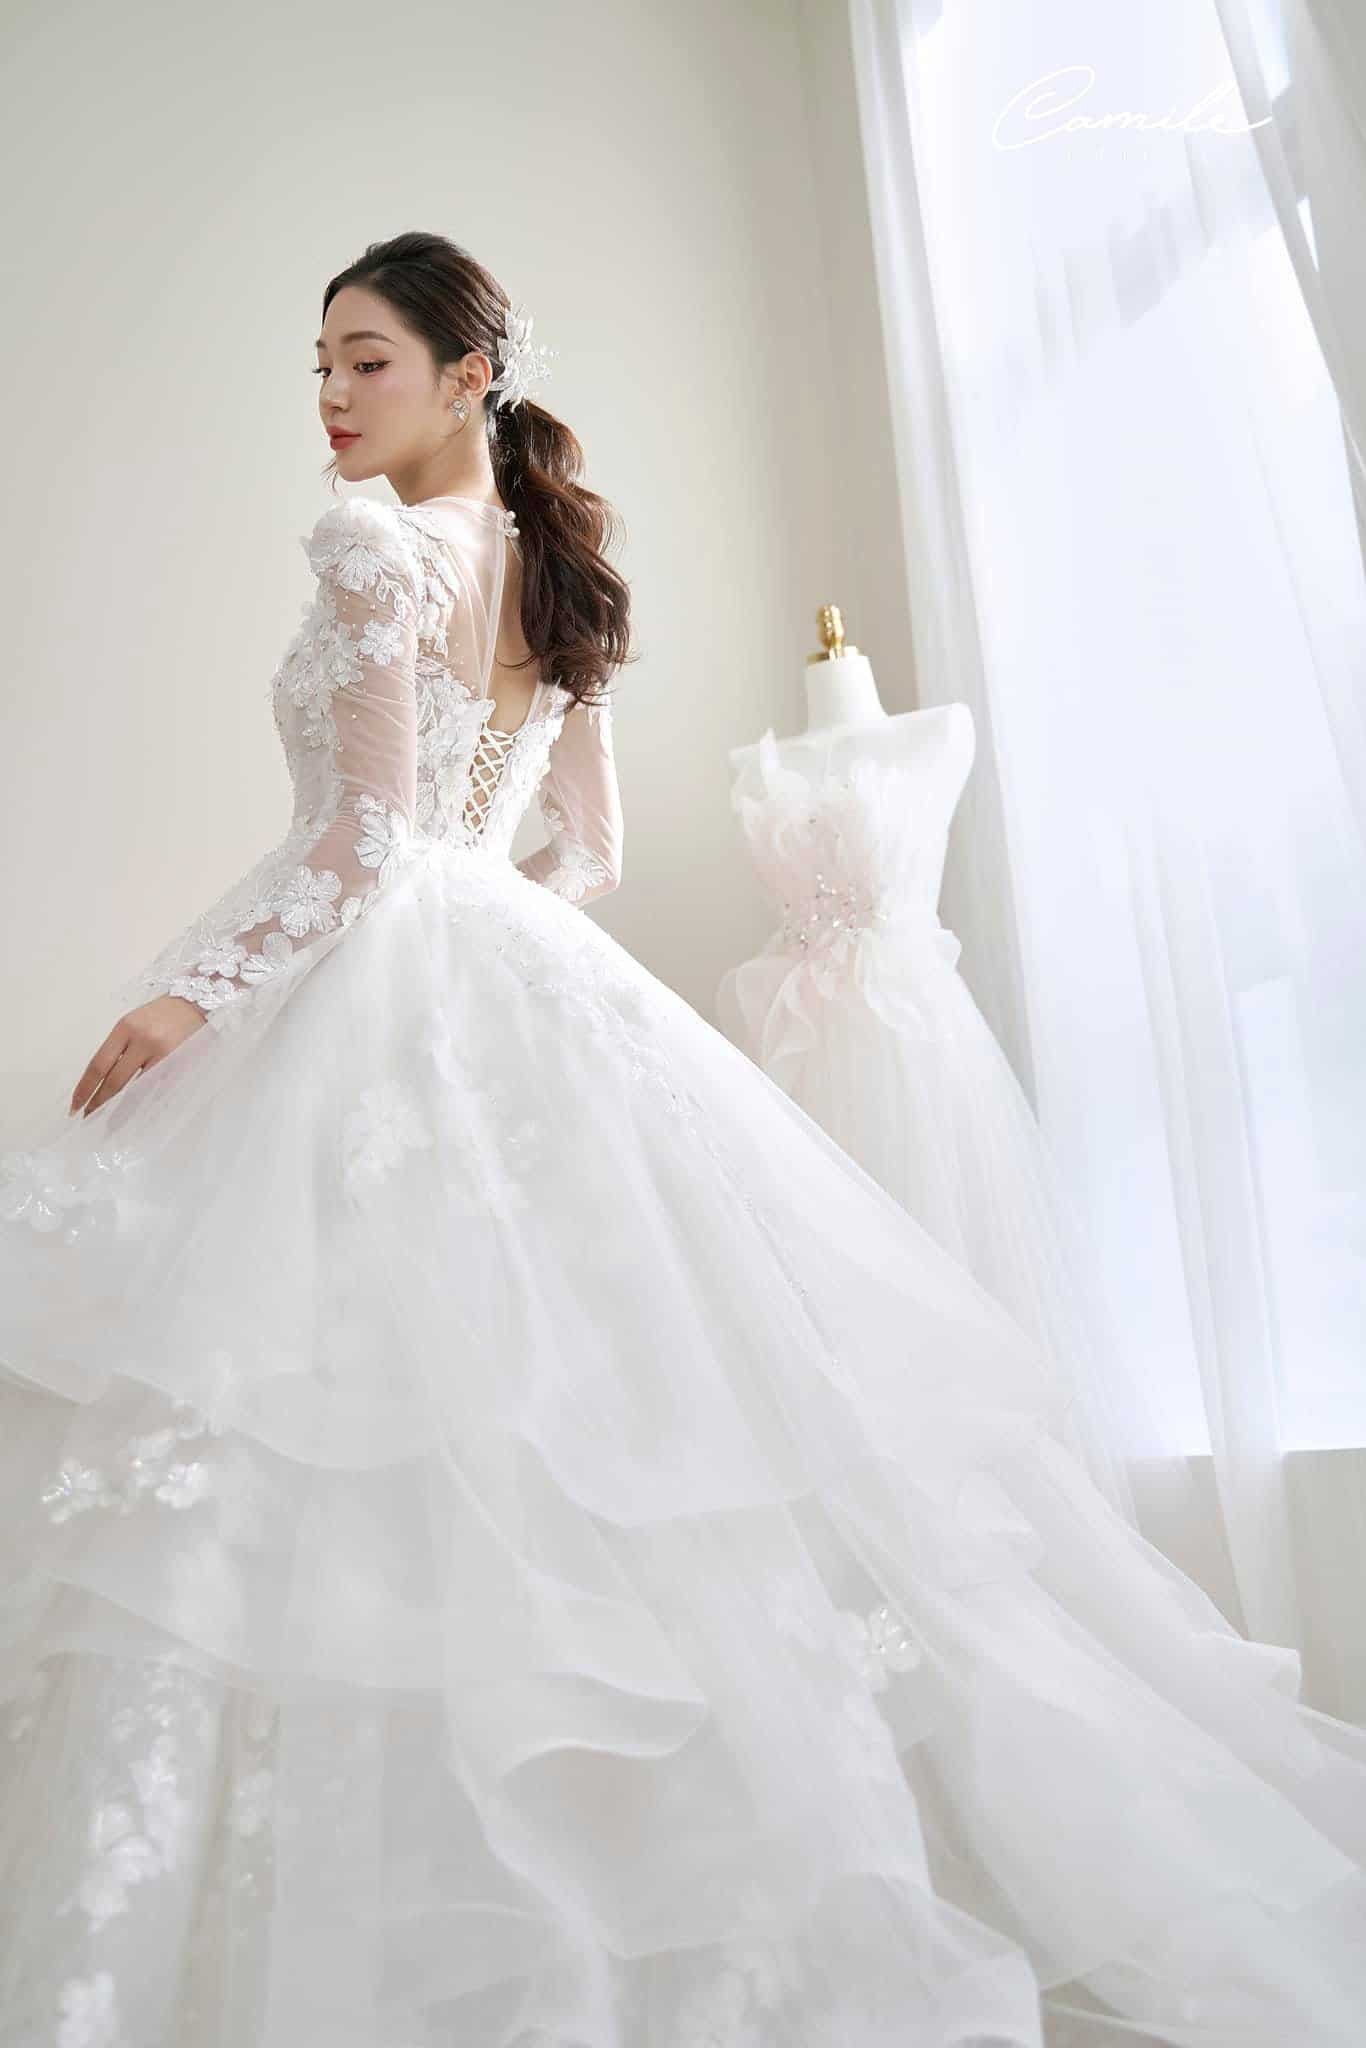 Mua váy cưới giá bao nhiêu tiền, ở đâu giá rẻ tại TPHCM?